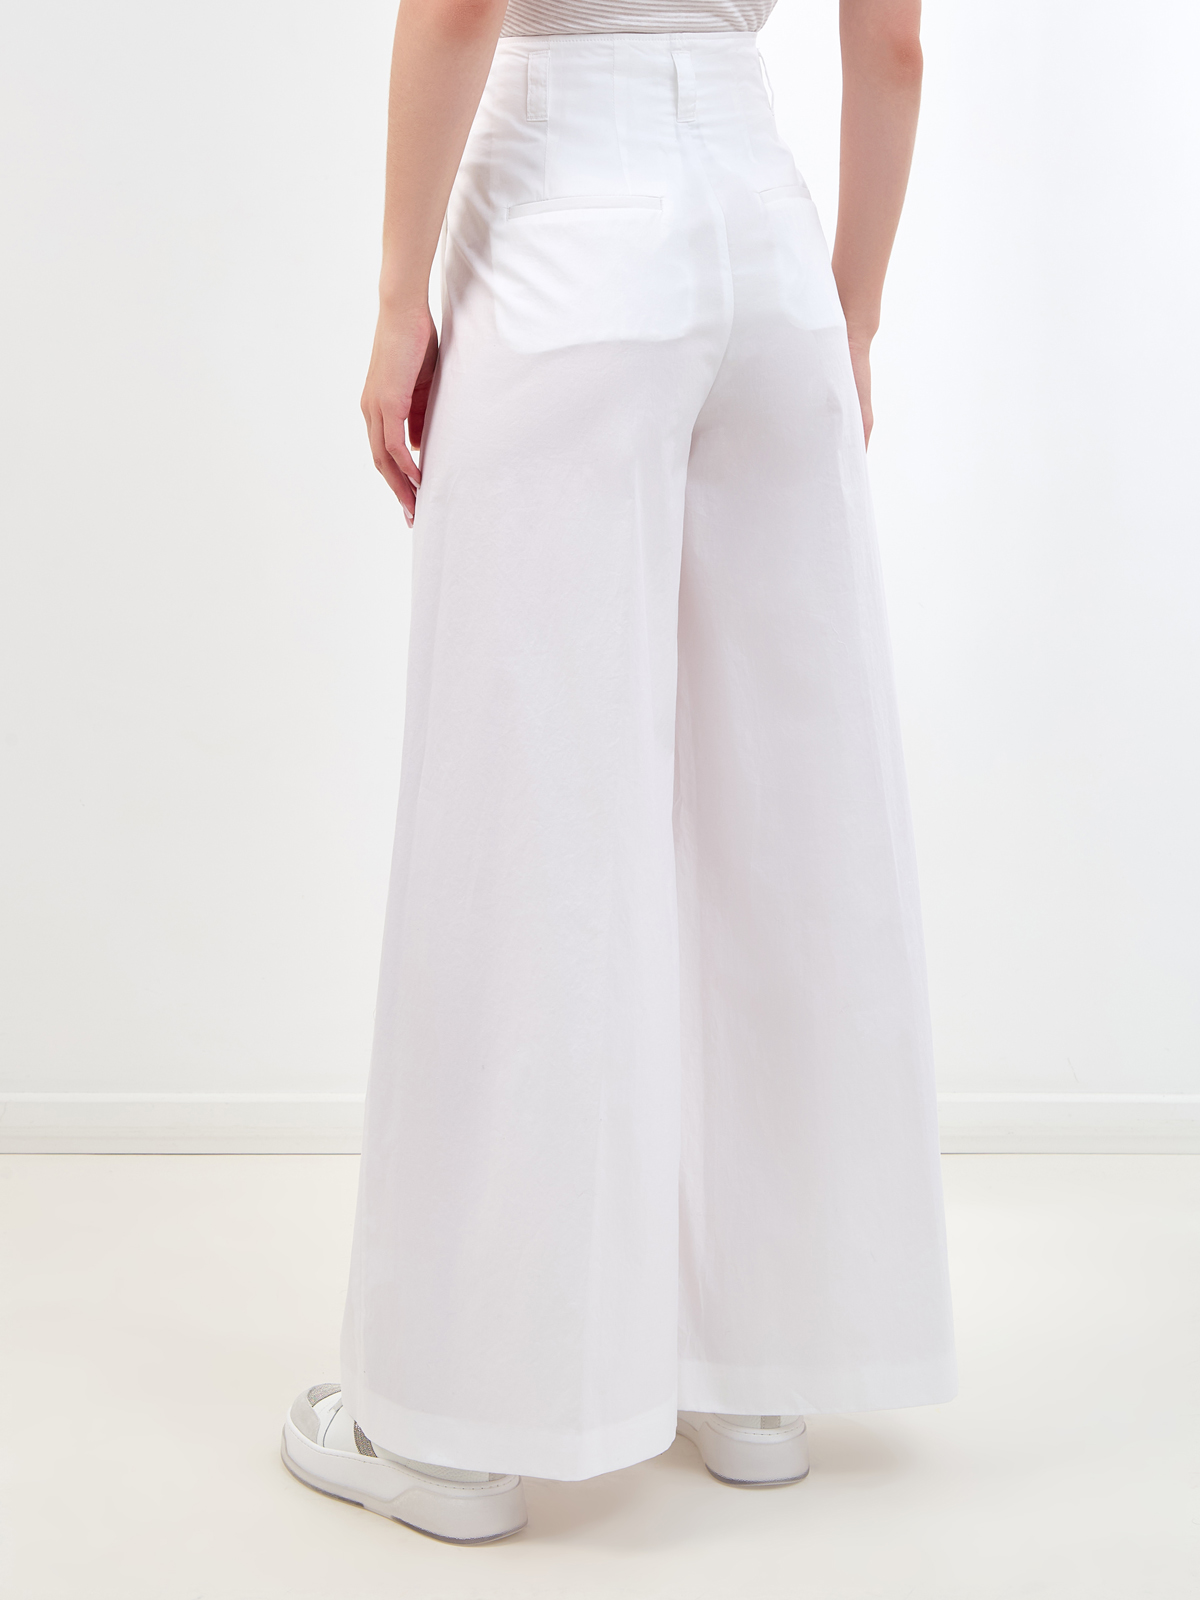 Широкие брюки в стиле leisure из хлопка на высокой посадке PESERICO, цвет белый, размер 40;42;44;46 - фото 4